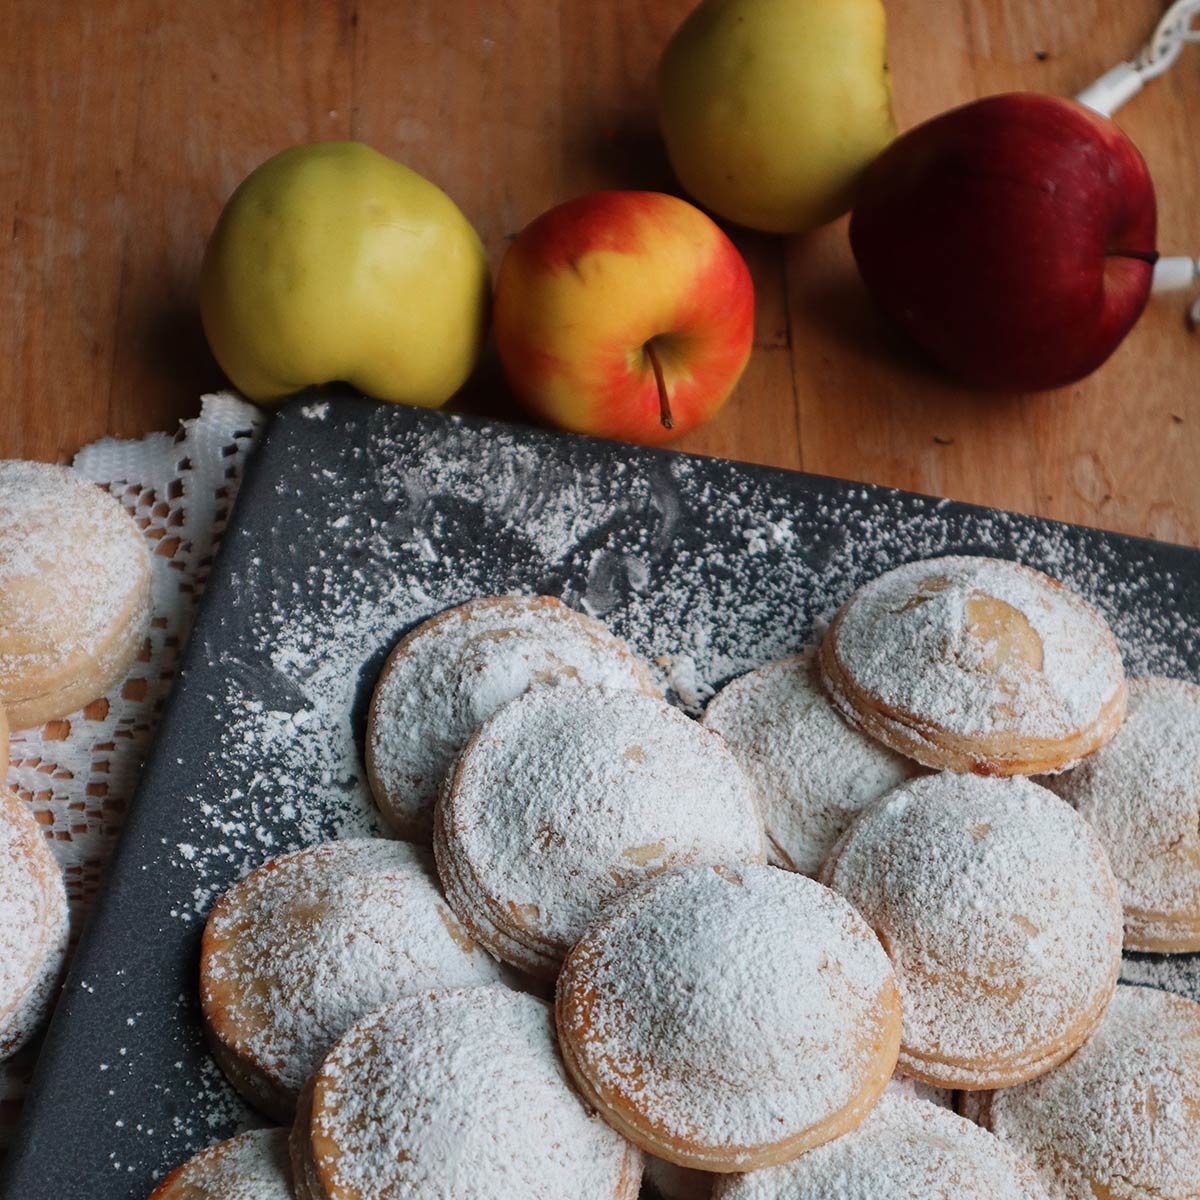 Cuor di mela – biscotti di frolla ripieni di mele e cannella